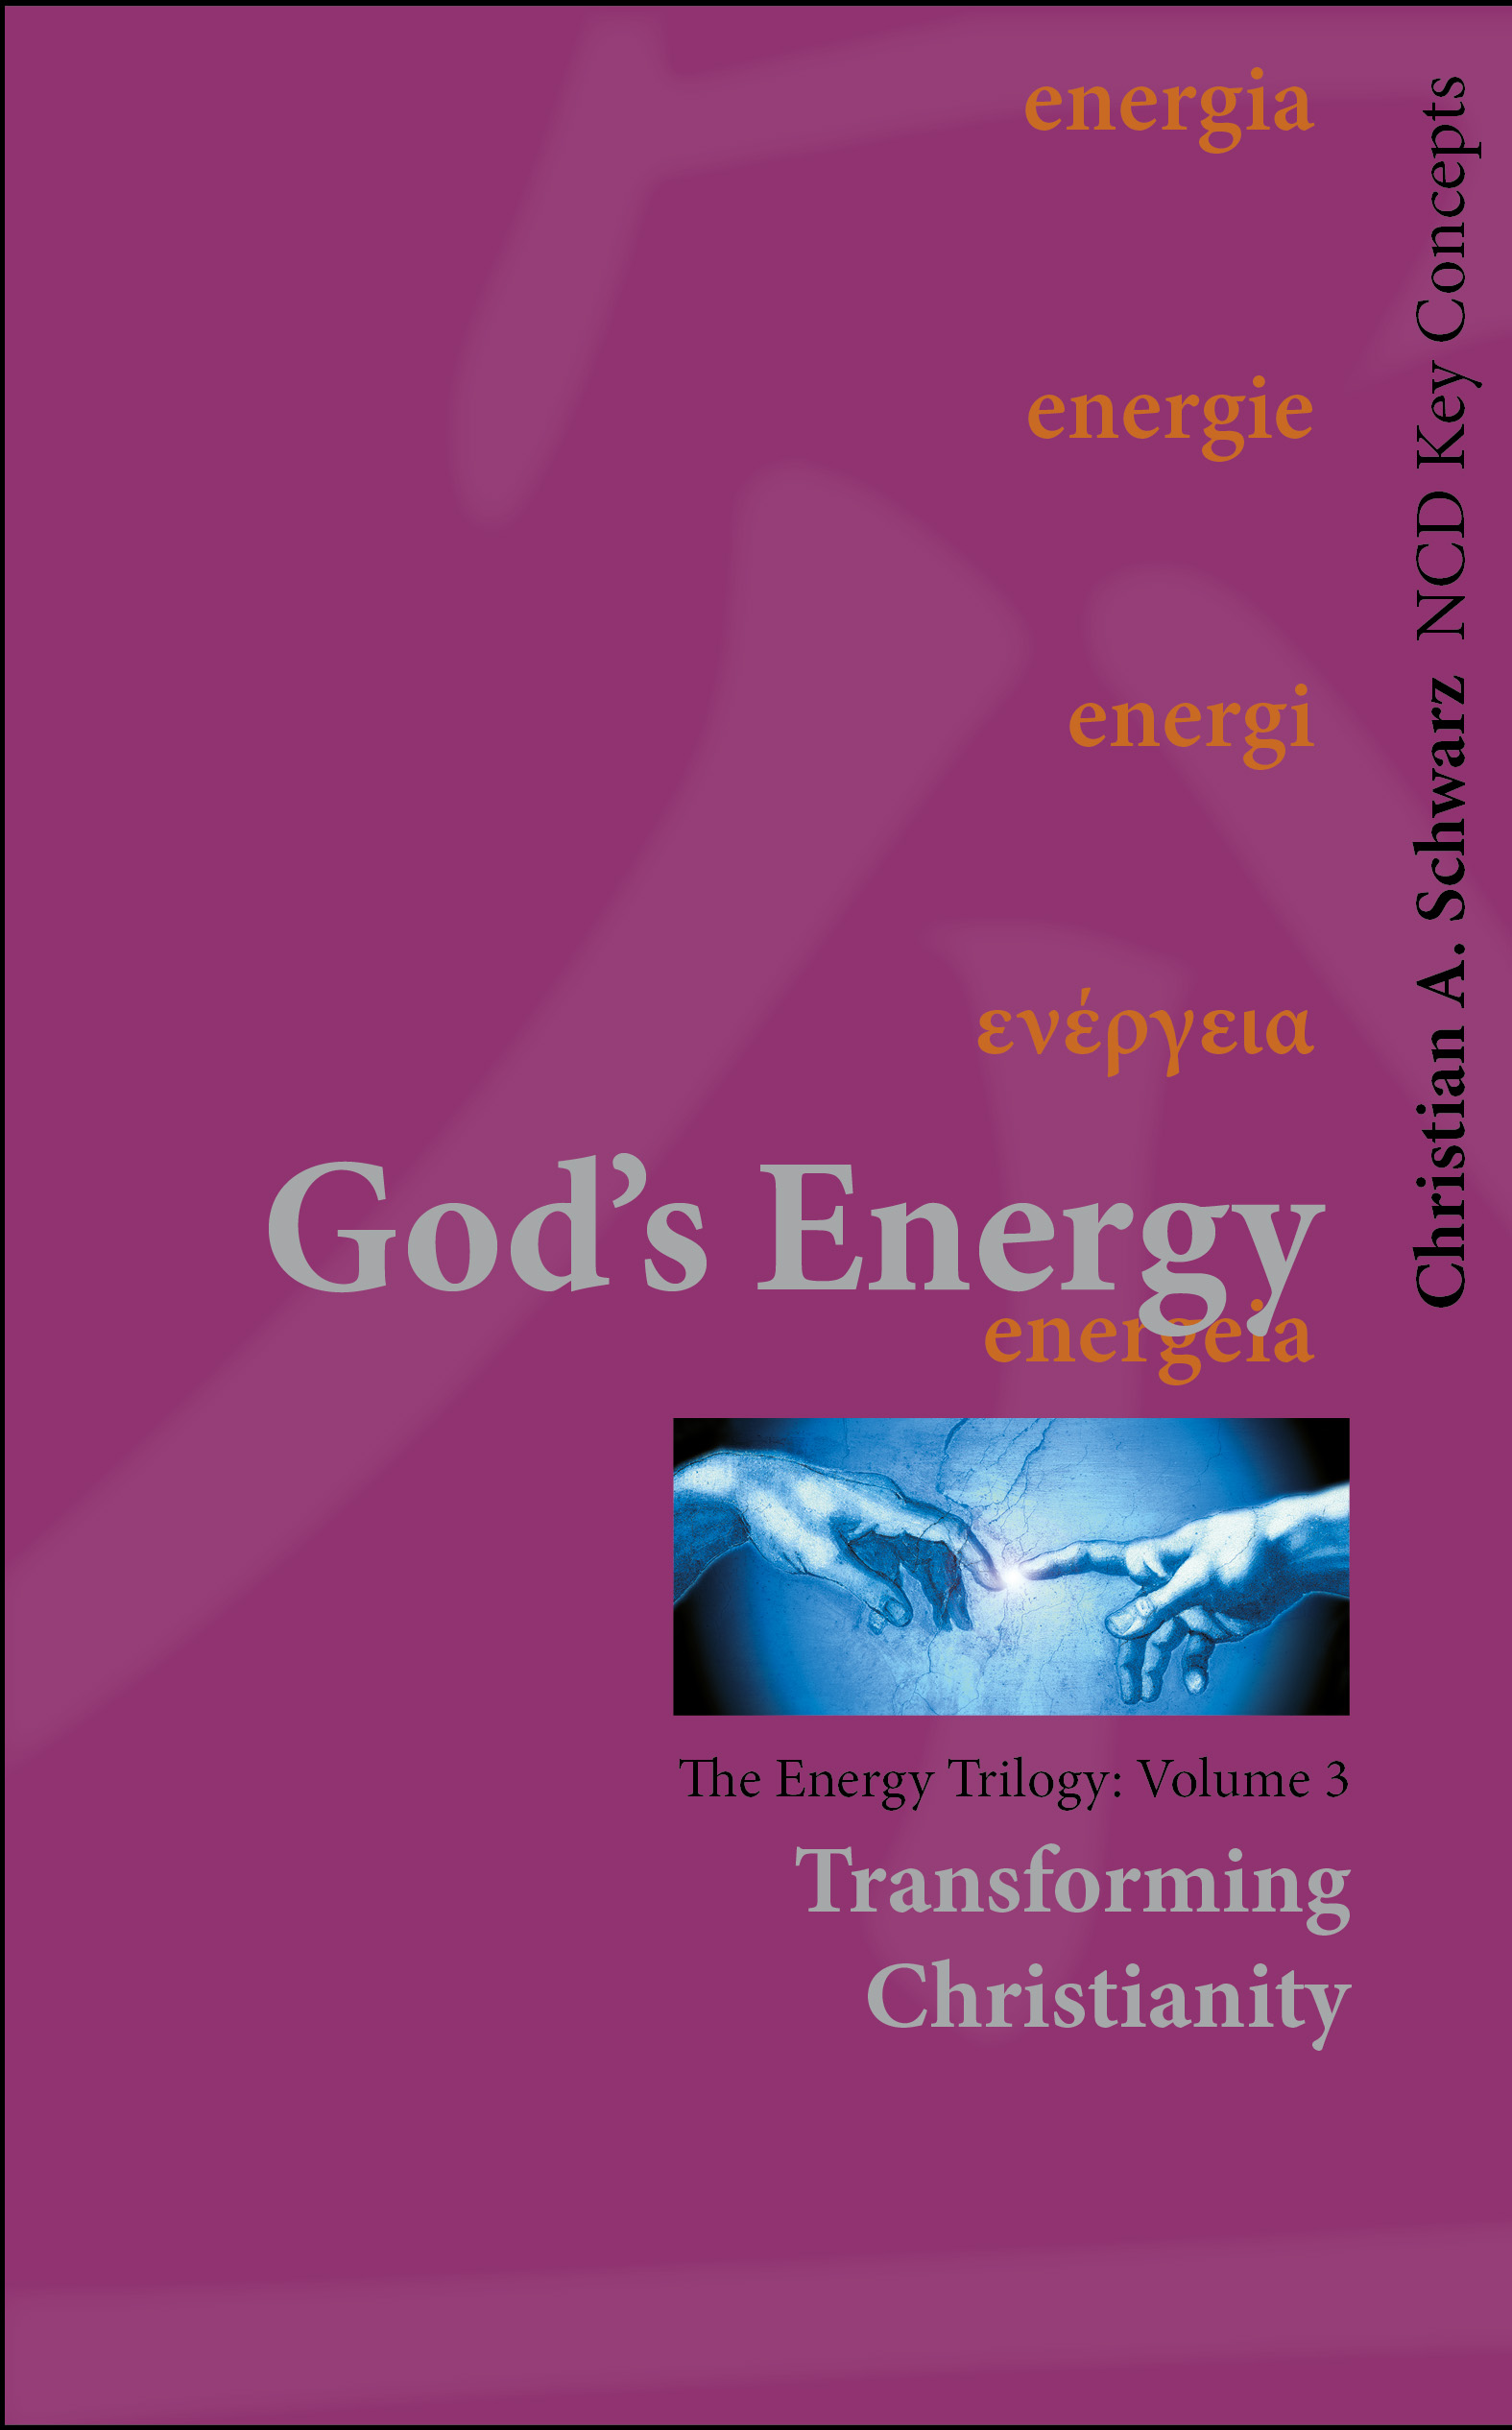 God's Energy—Volume 3